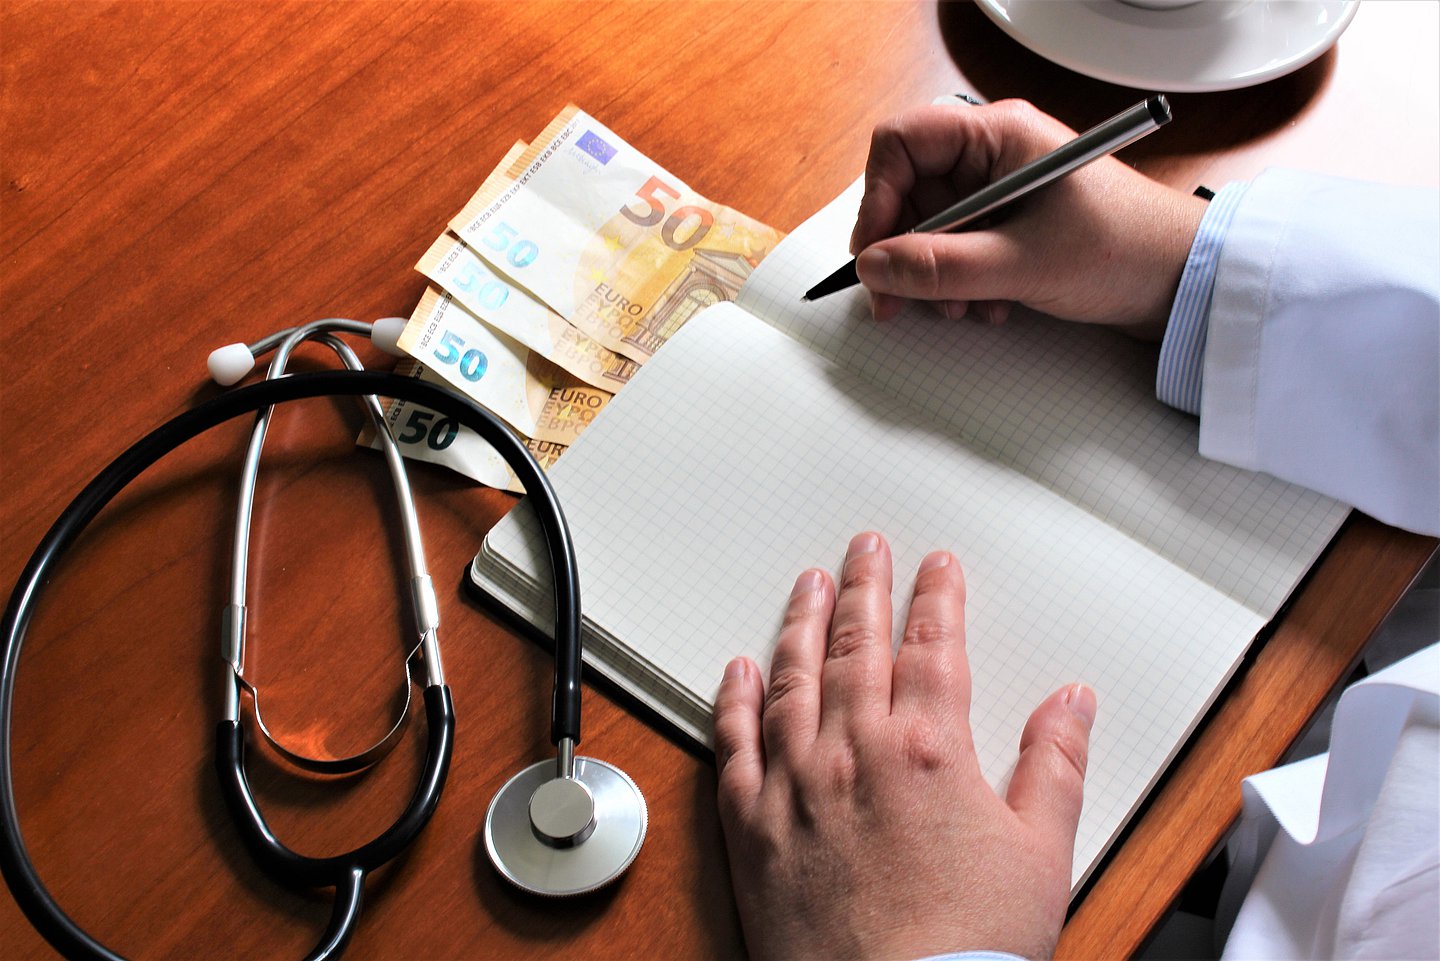 Das Foto zeigt einen Arzt, der an seinem Schreibtisch sitzend etwas in sein Notizbuch schreibt. Daneben lieben vier 50 Euro-Scheine.